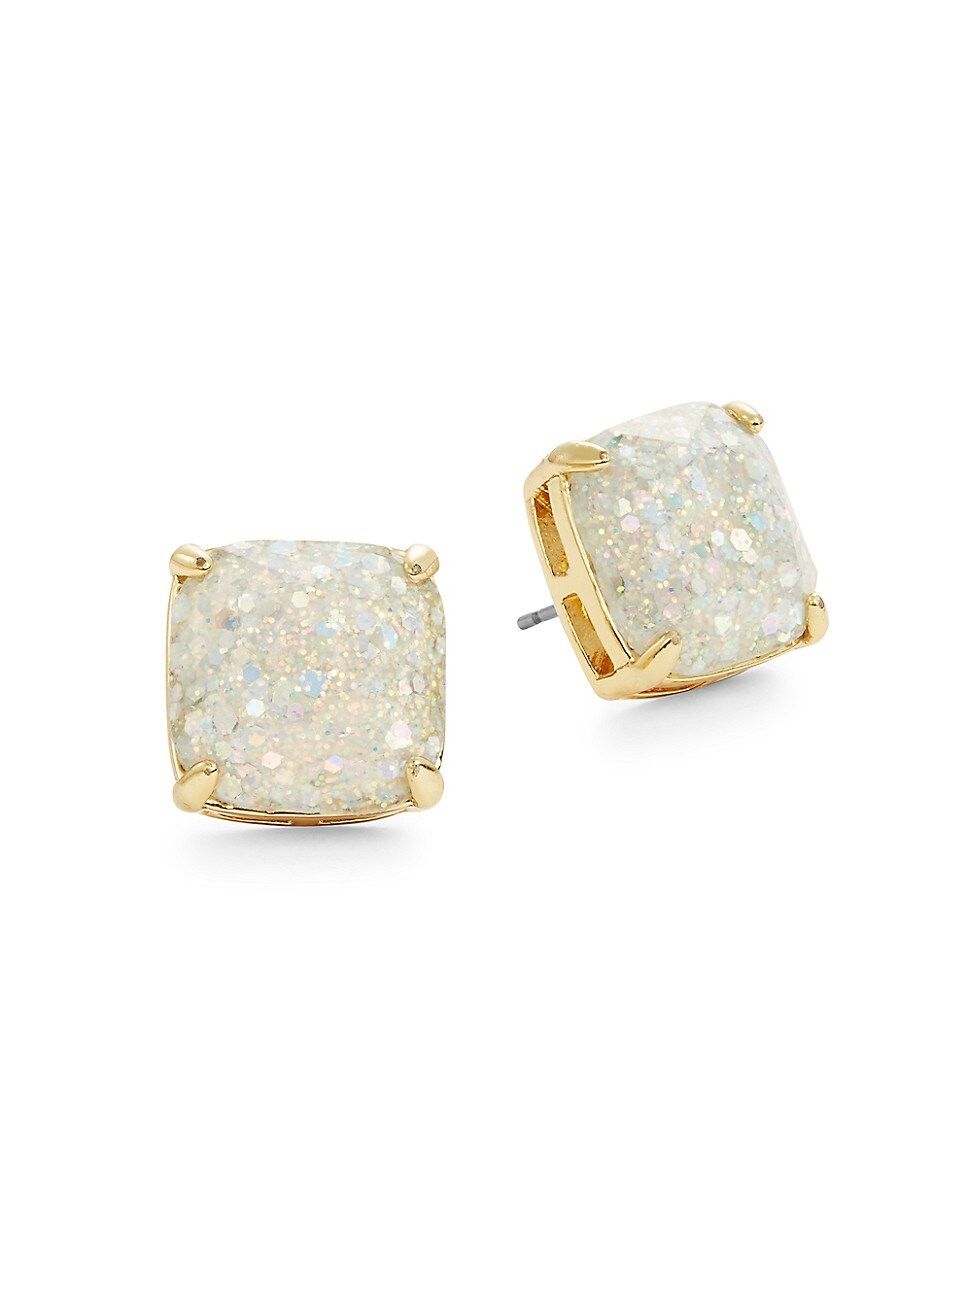 Kate Spade New York Women's Glitter Square Stud Earrings - Opal Glitter | Saks Fifth Avenue